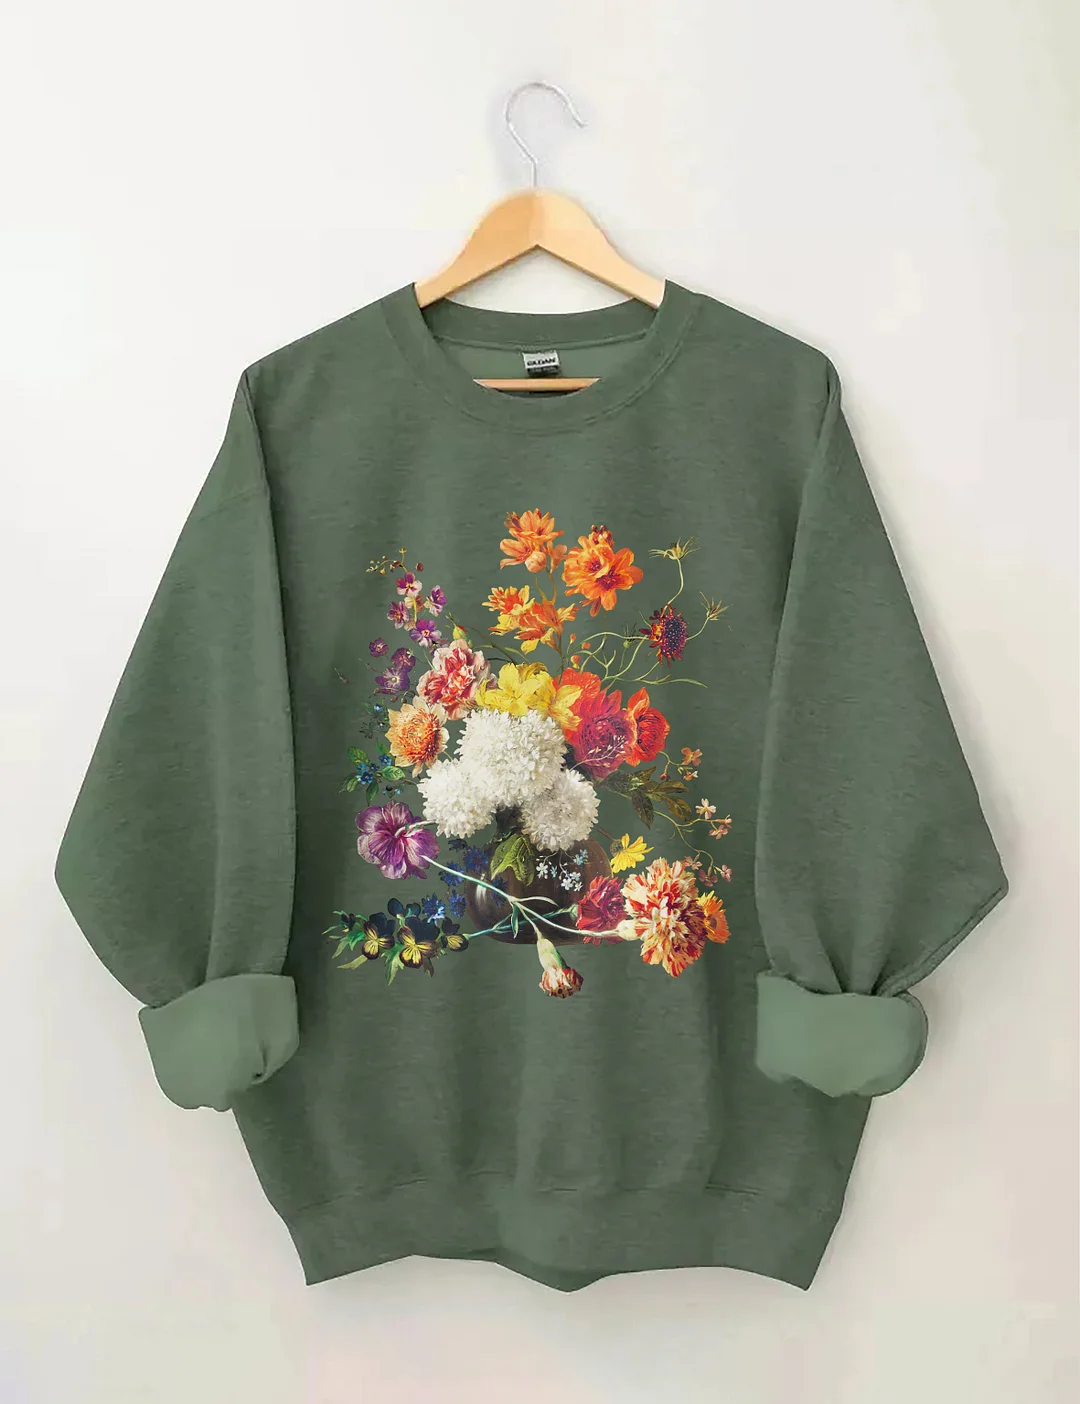 Aesthetic Flower Sweatshirt